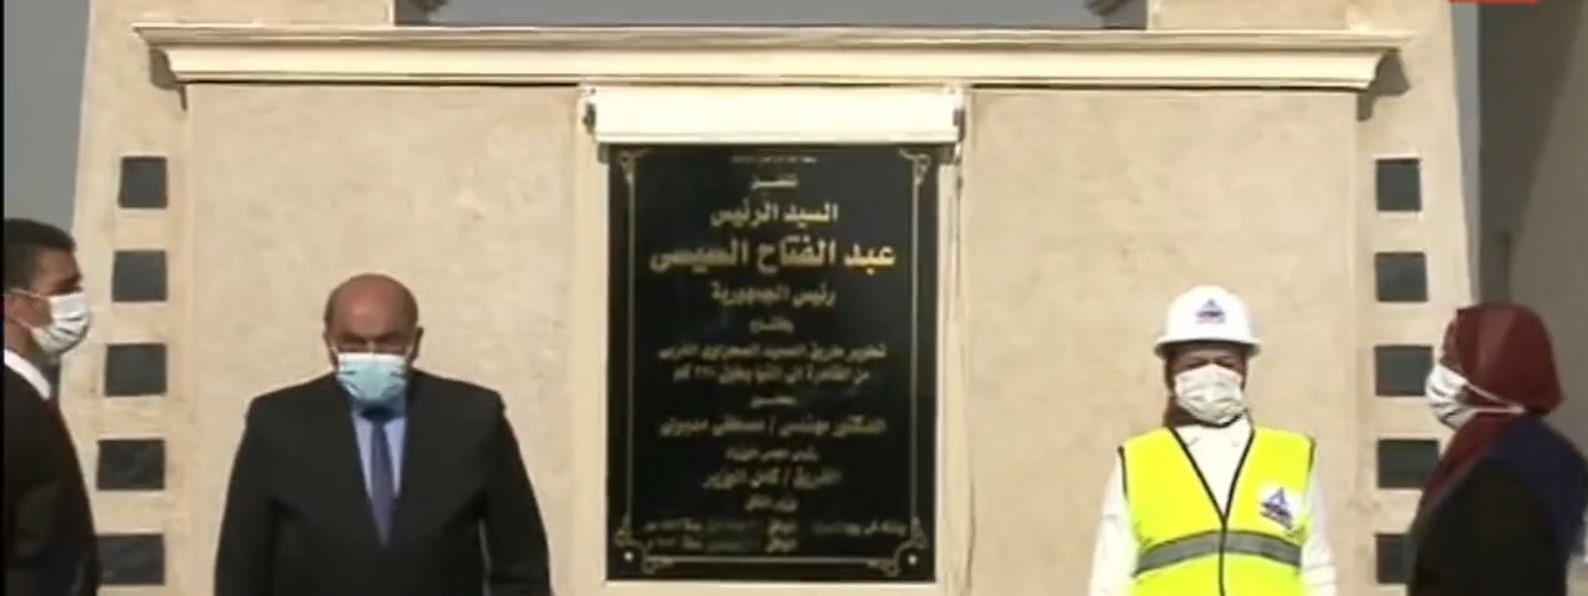 الرئيس السيسي يفتتح عددا من المشروعات القومية الجديدة بالمنيا عبر الفيديو كونفرنس